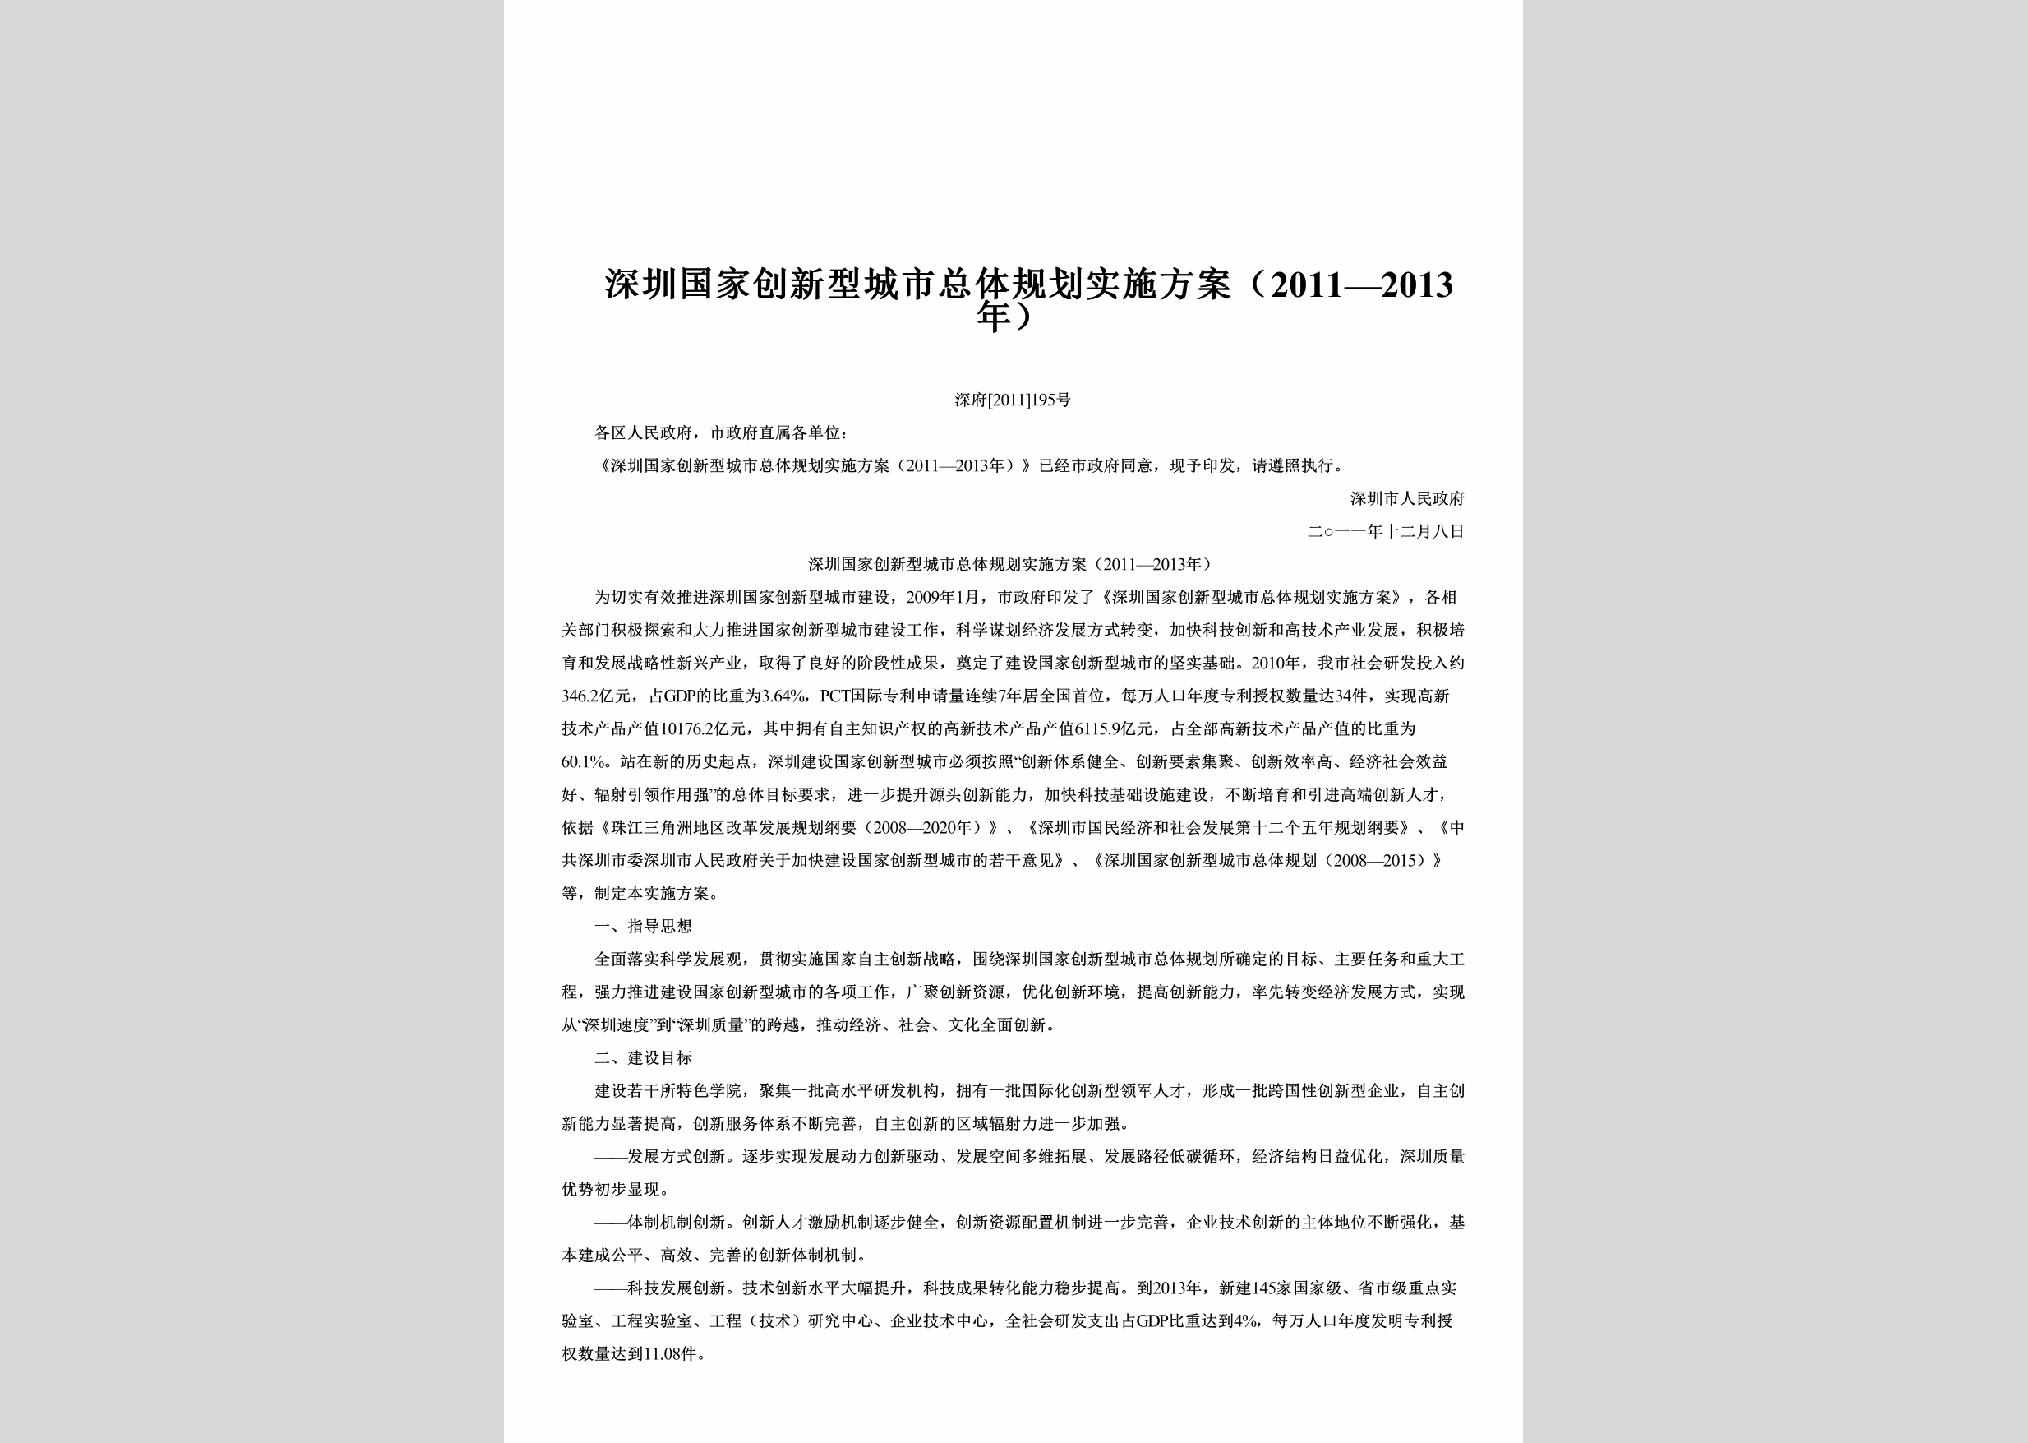 深府[2011]195号：深圳国家创新型城市总体规划实施方案（2011—2013年）